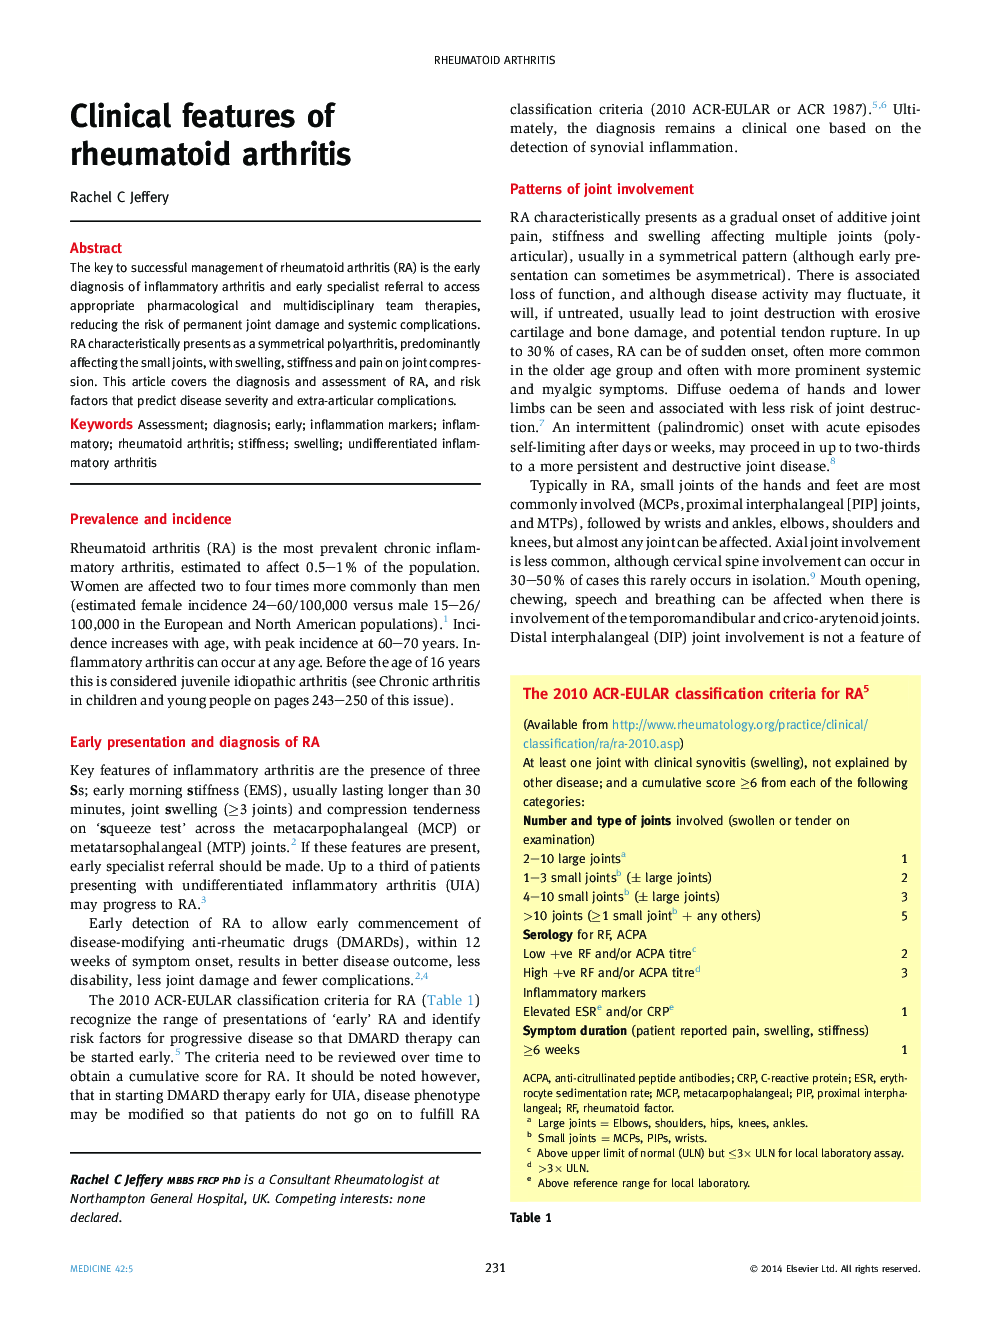 Clinical features of rheumatoid arthritis